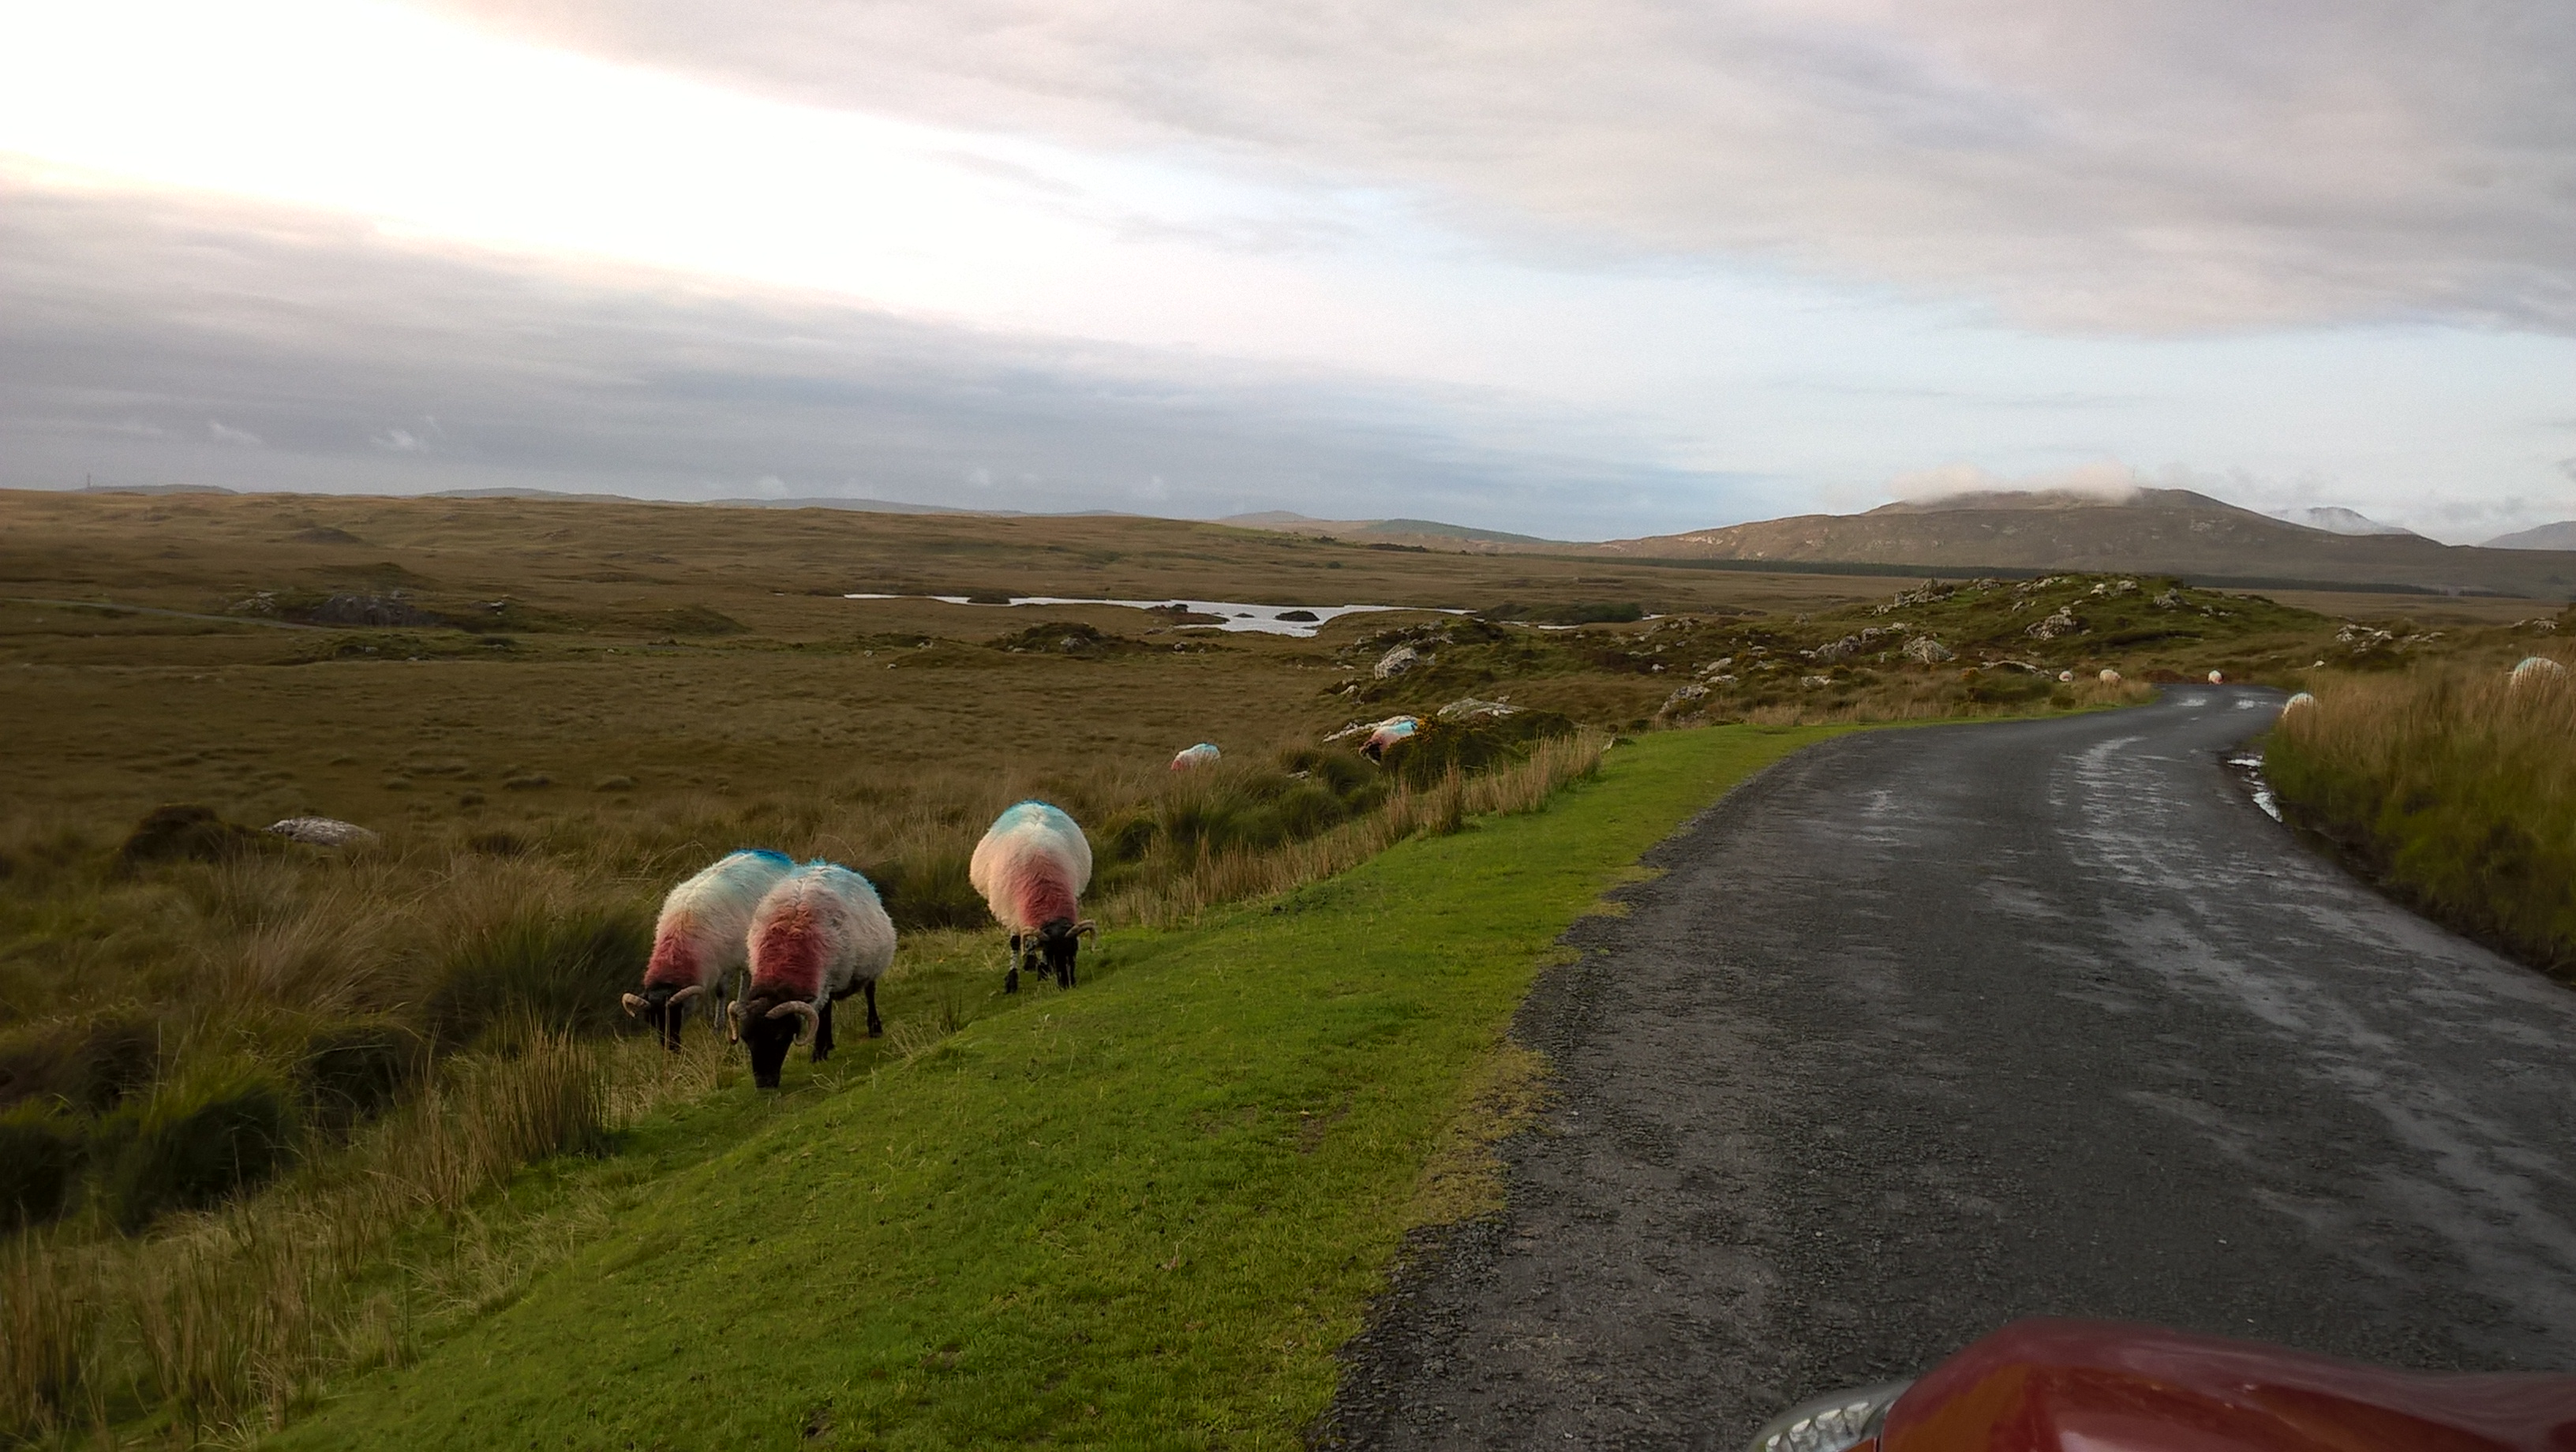 Strada irlandese isolata con solo pecore che pascolano